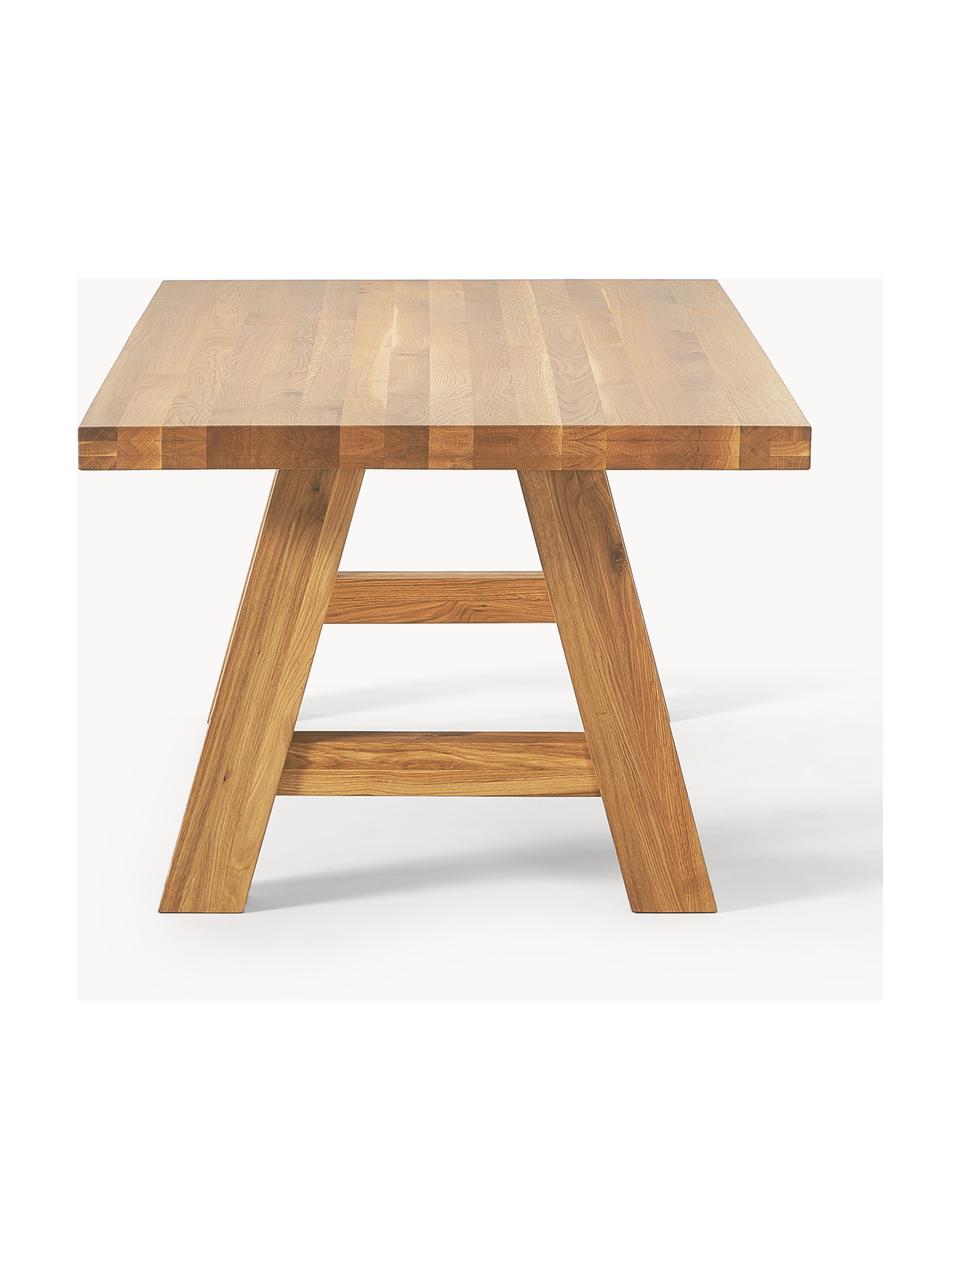 Jídelní stůl z masivního dubového dřeva Ashton, různé velikosti, Masivní dubové dřevo, olejované 
100 % dřevo z udržitelného lesnictví

Tento produkt je vyroben z udržitelných zdrojů dřeva s certifikací FSC®., Olejované dubové dřevo, Š 200 cm, H 100 cm